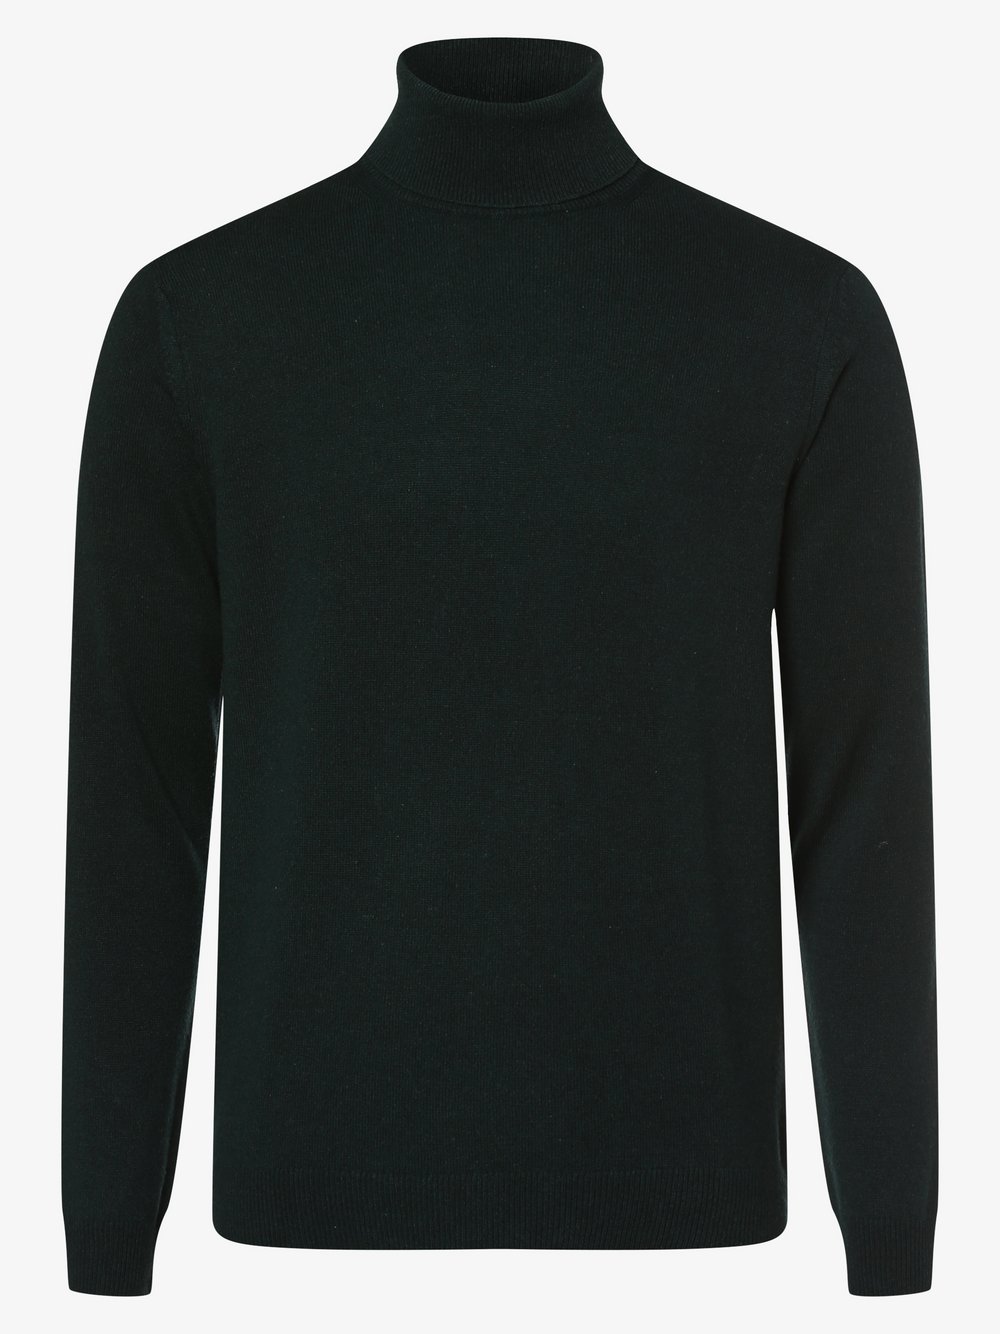 Finshley & Harding - Męski sweter z mieszanki kaszmiru i jedwabiu, zielony